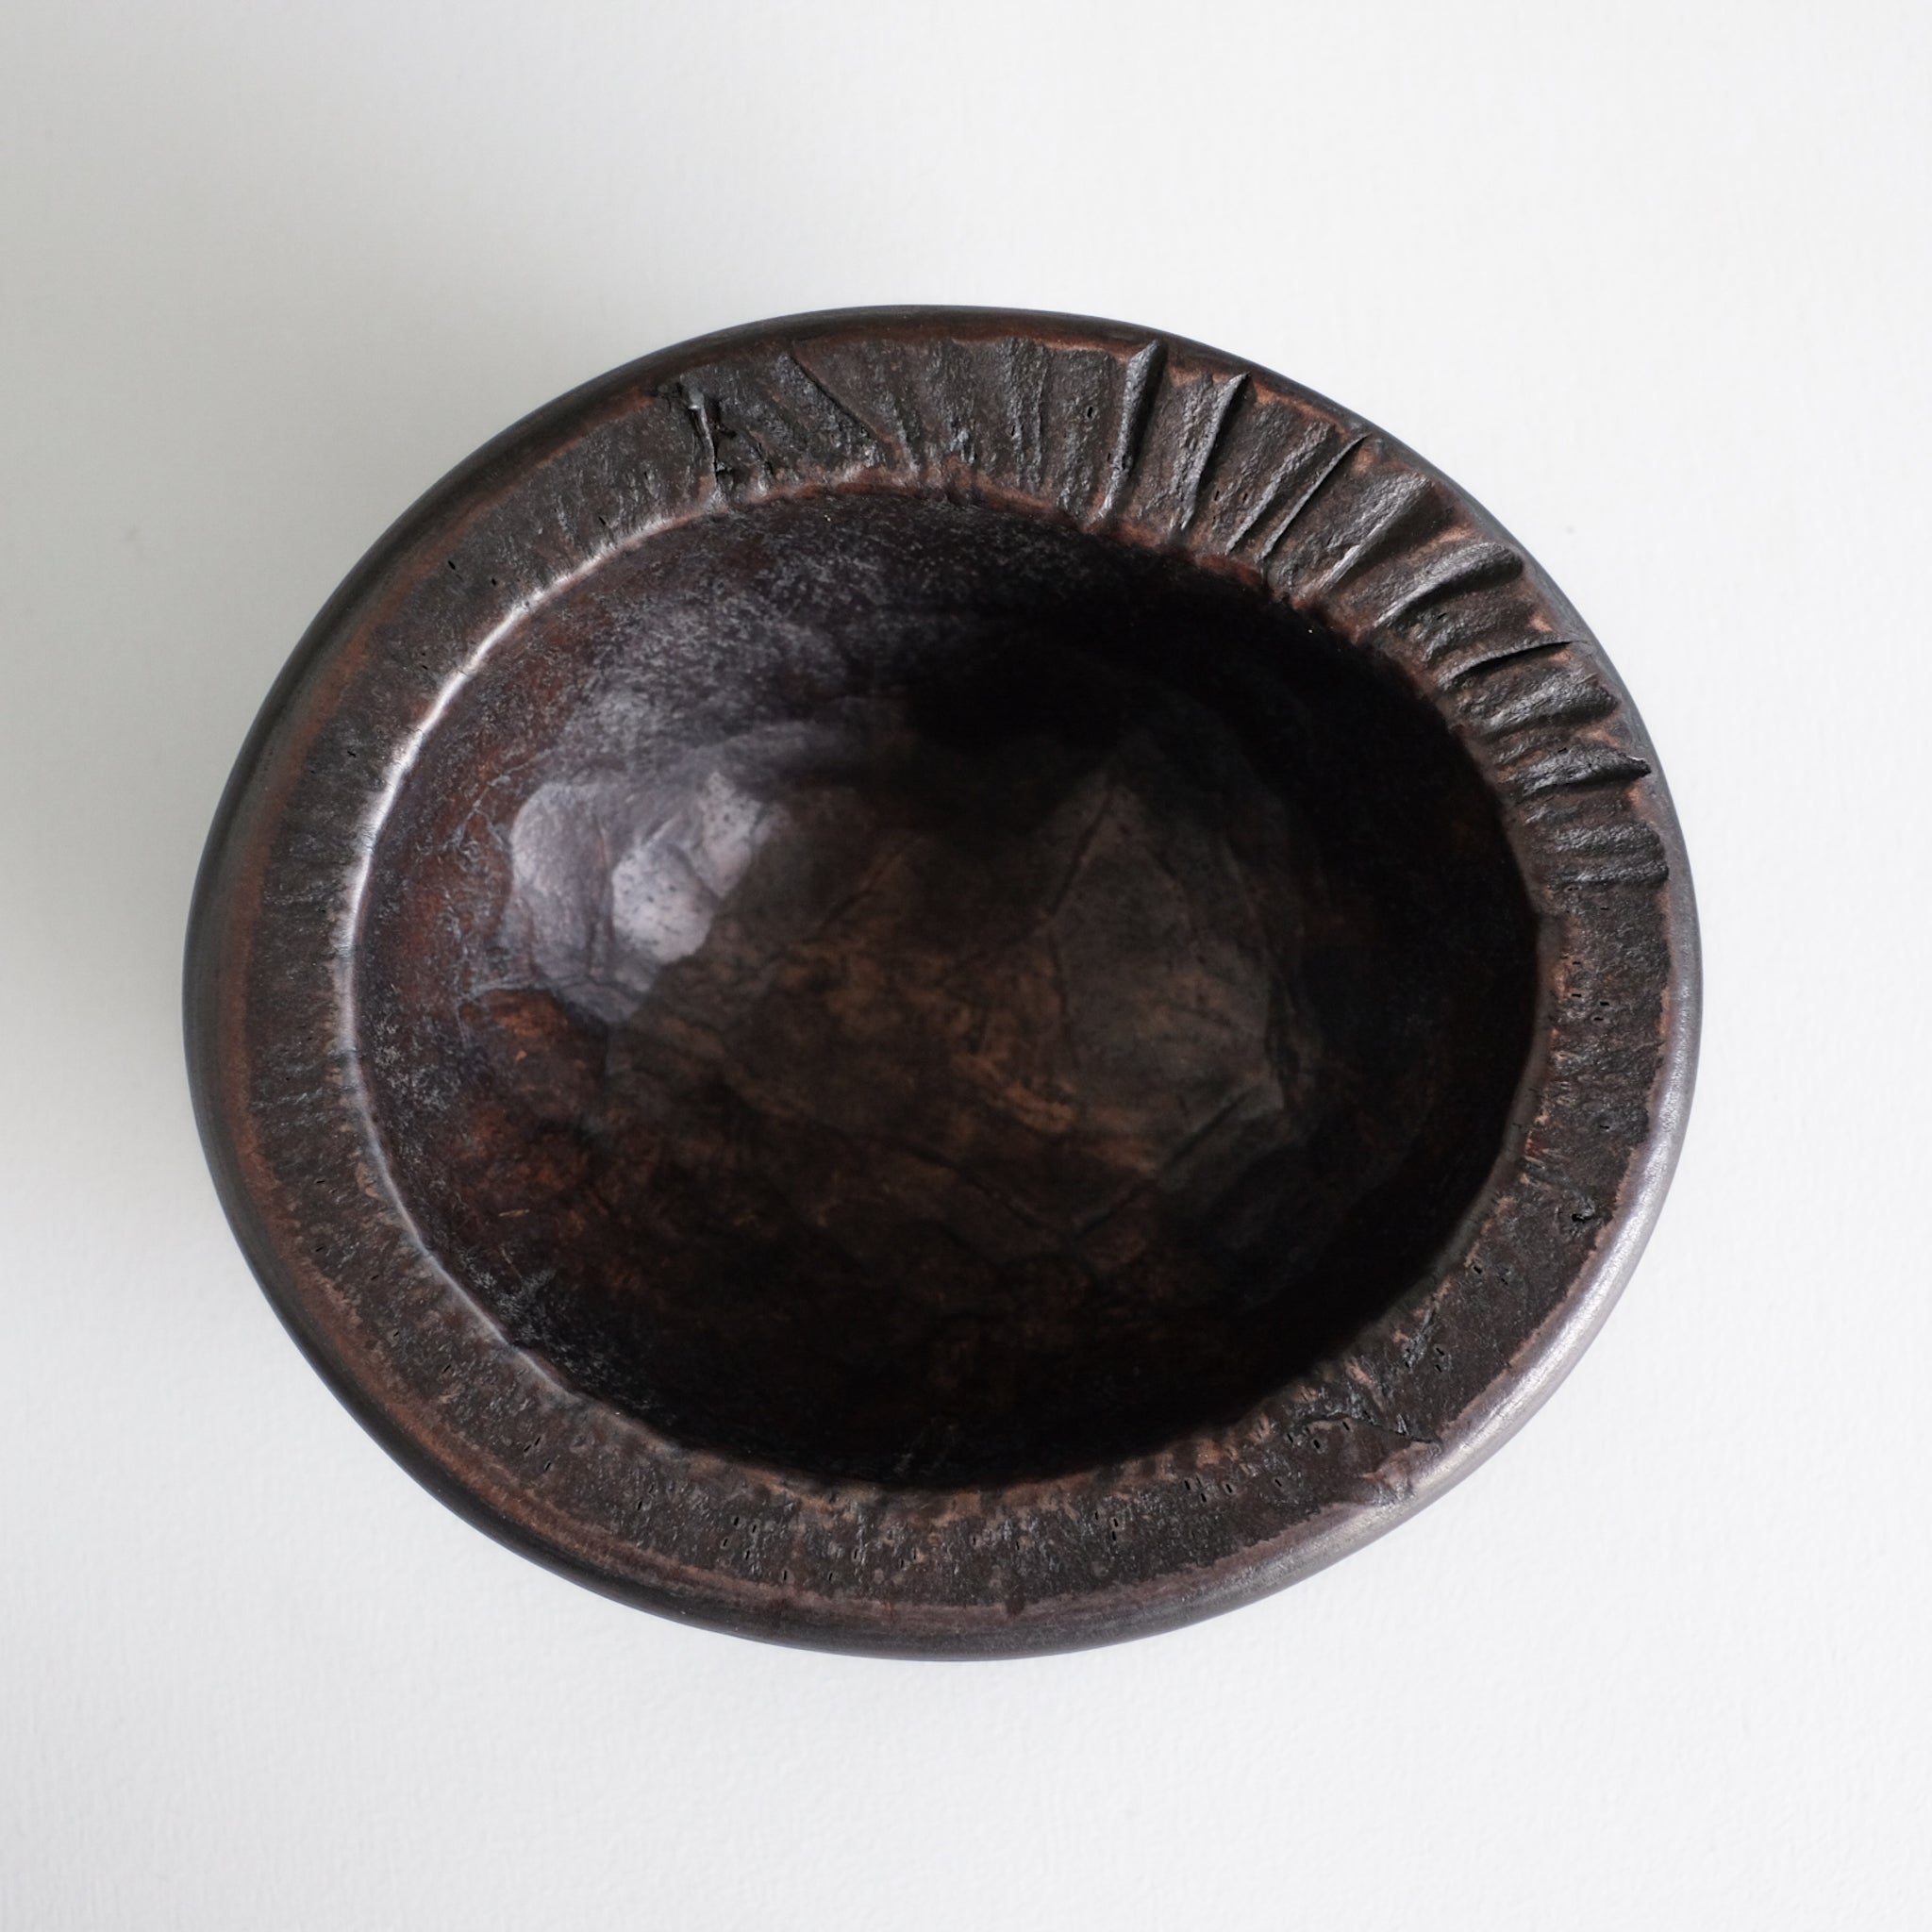 上治良充  積層ボウル   Yoshimichi Joji  Leather bowl